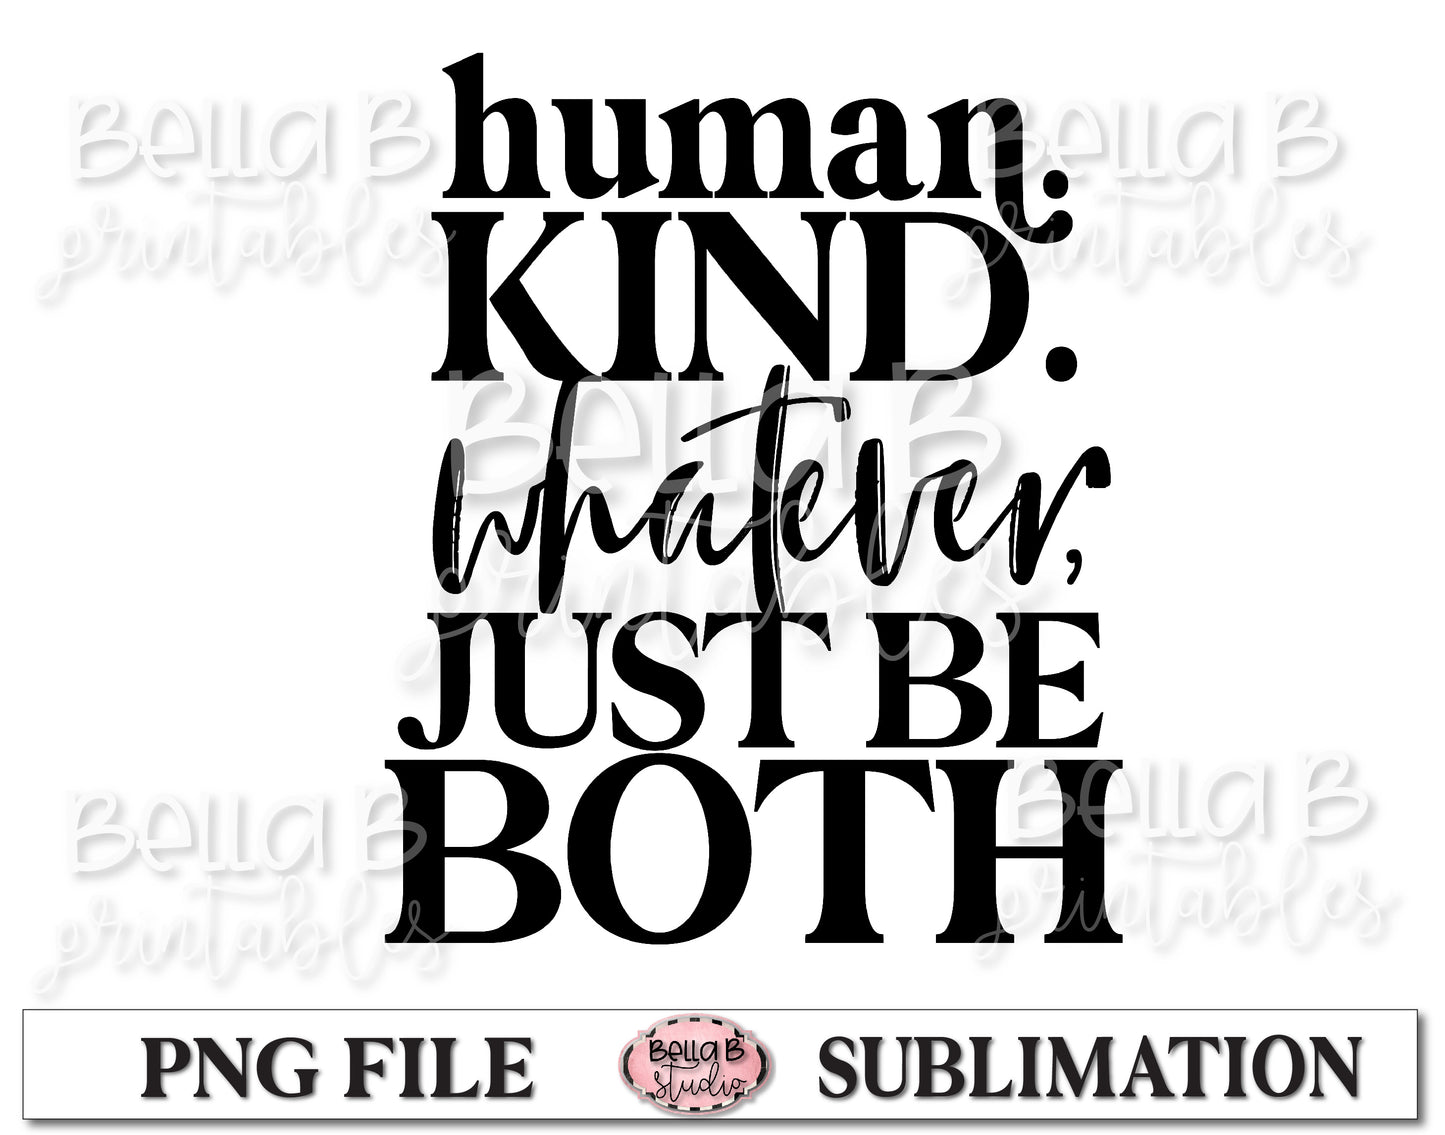 Human Kind Be Both Sublimation Design